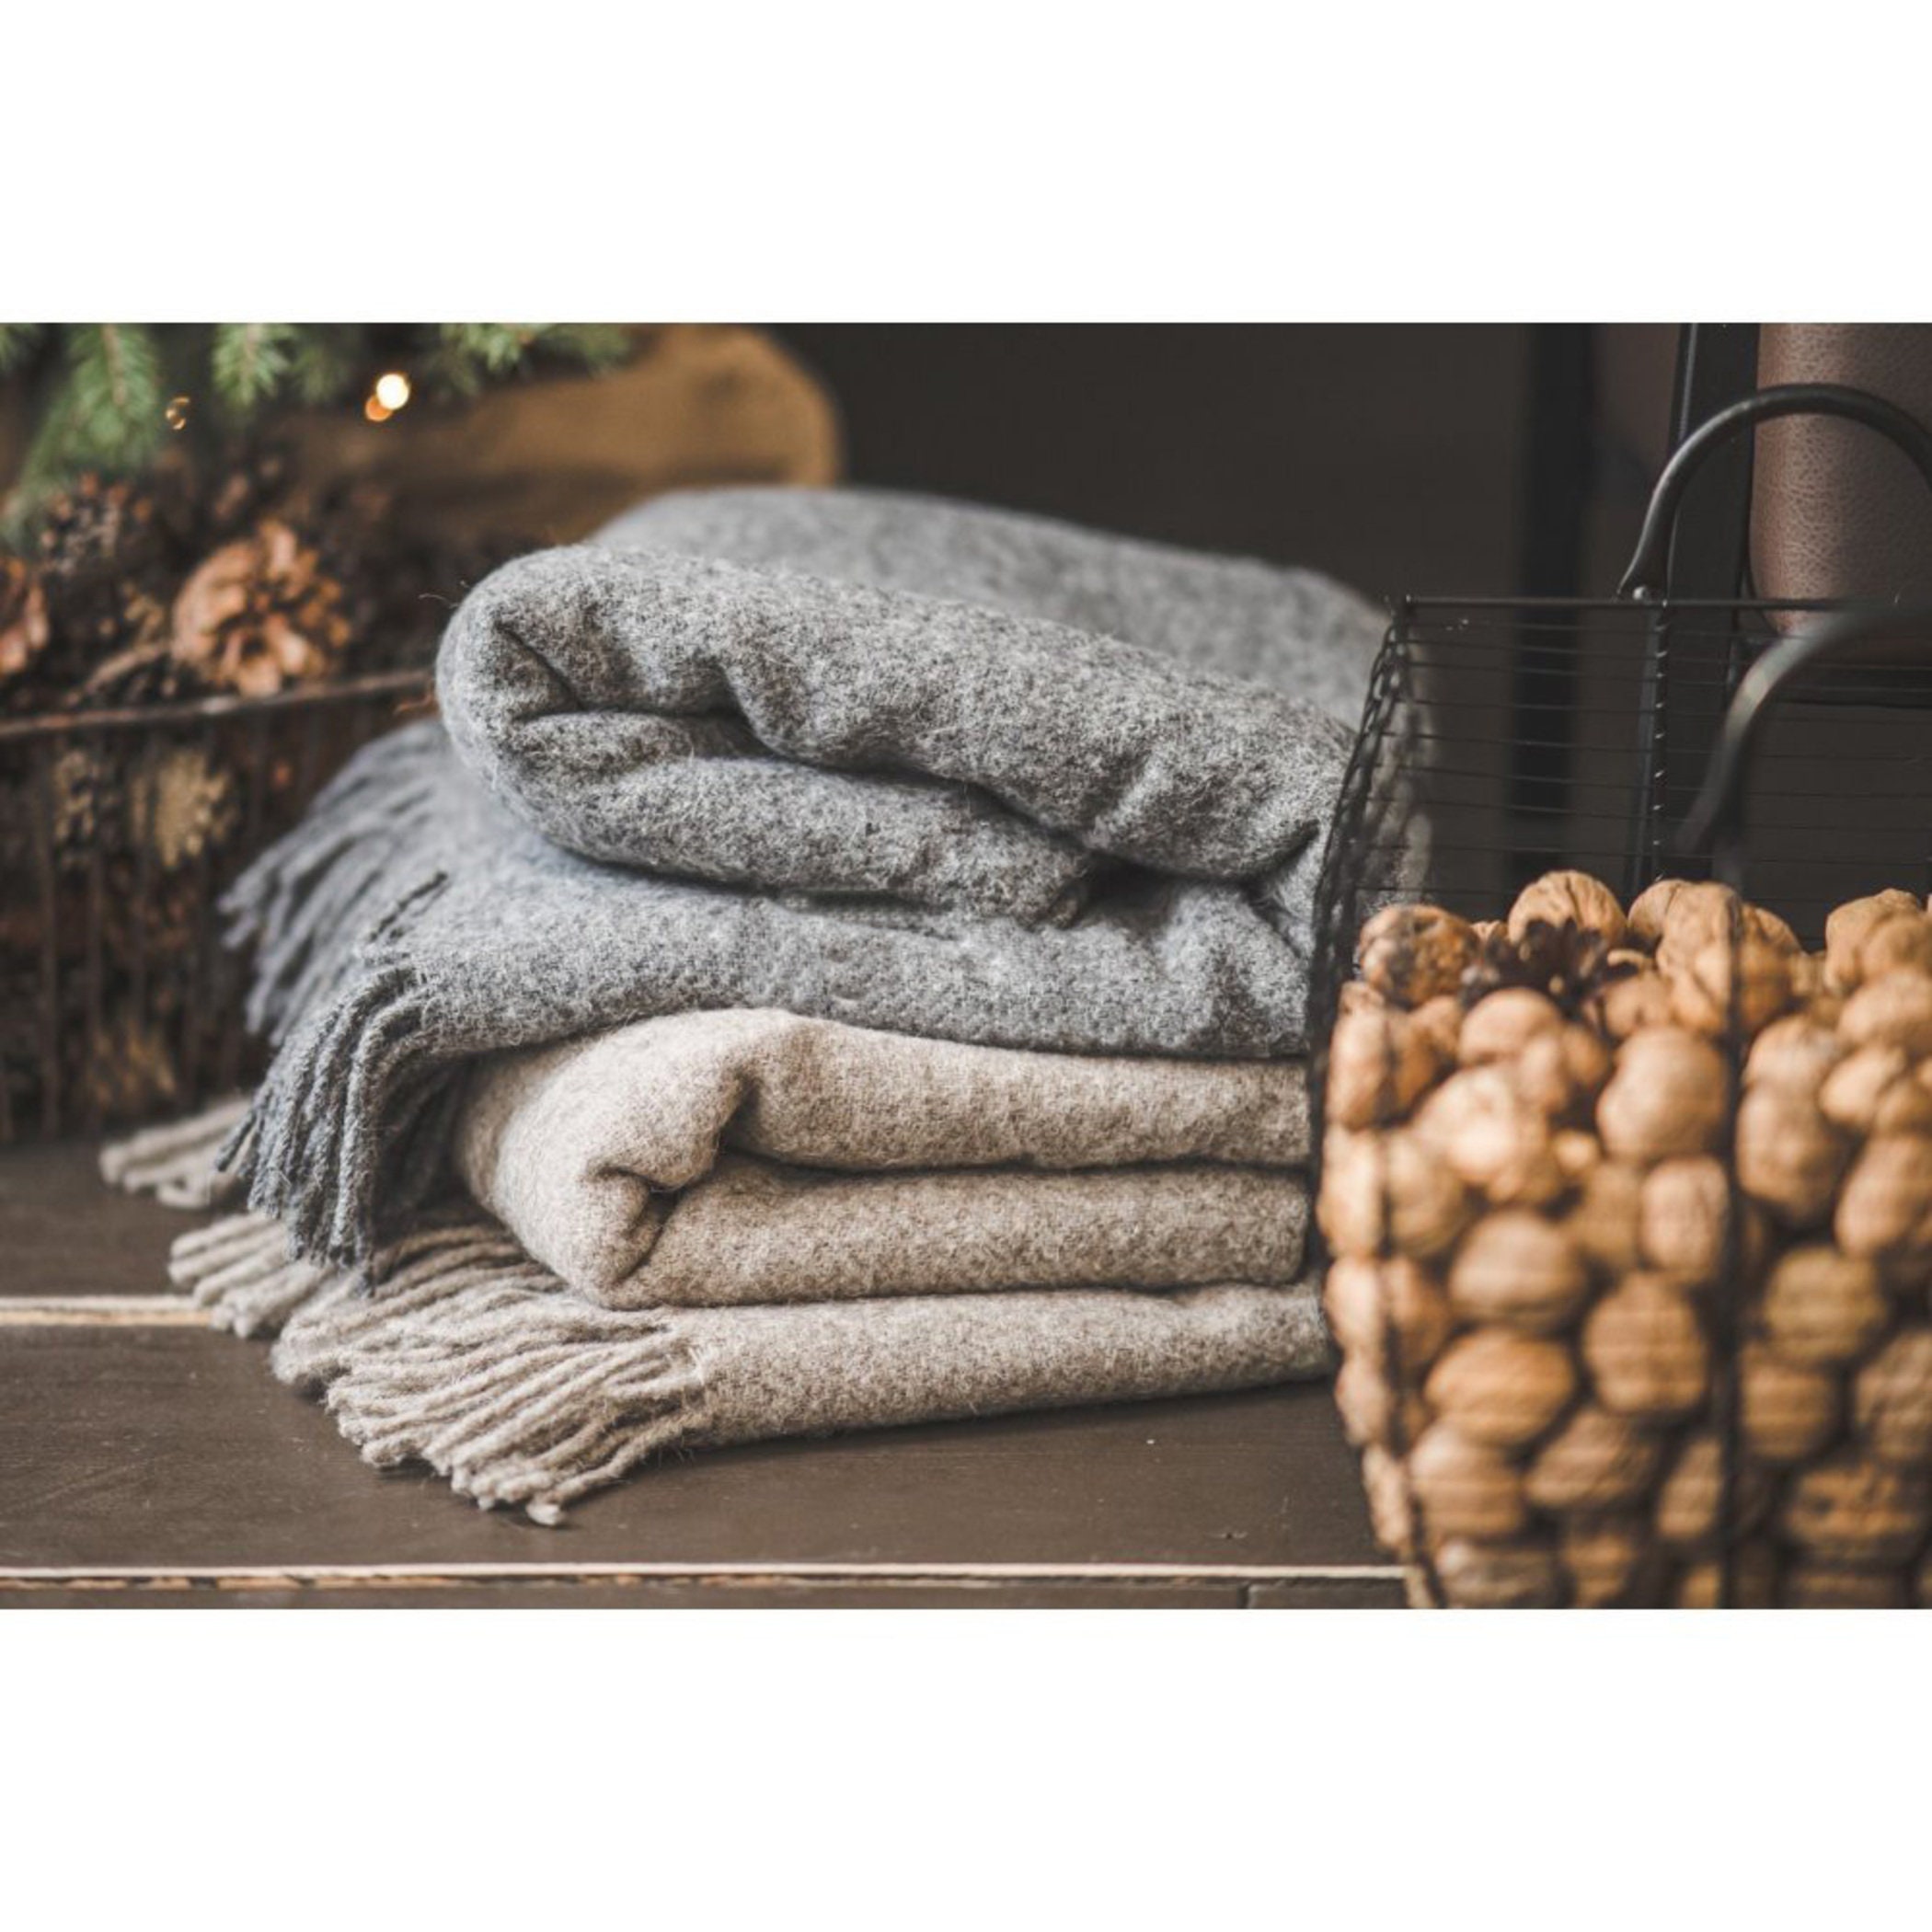 Mantas de lana de colores: tejido natural de alta calidad